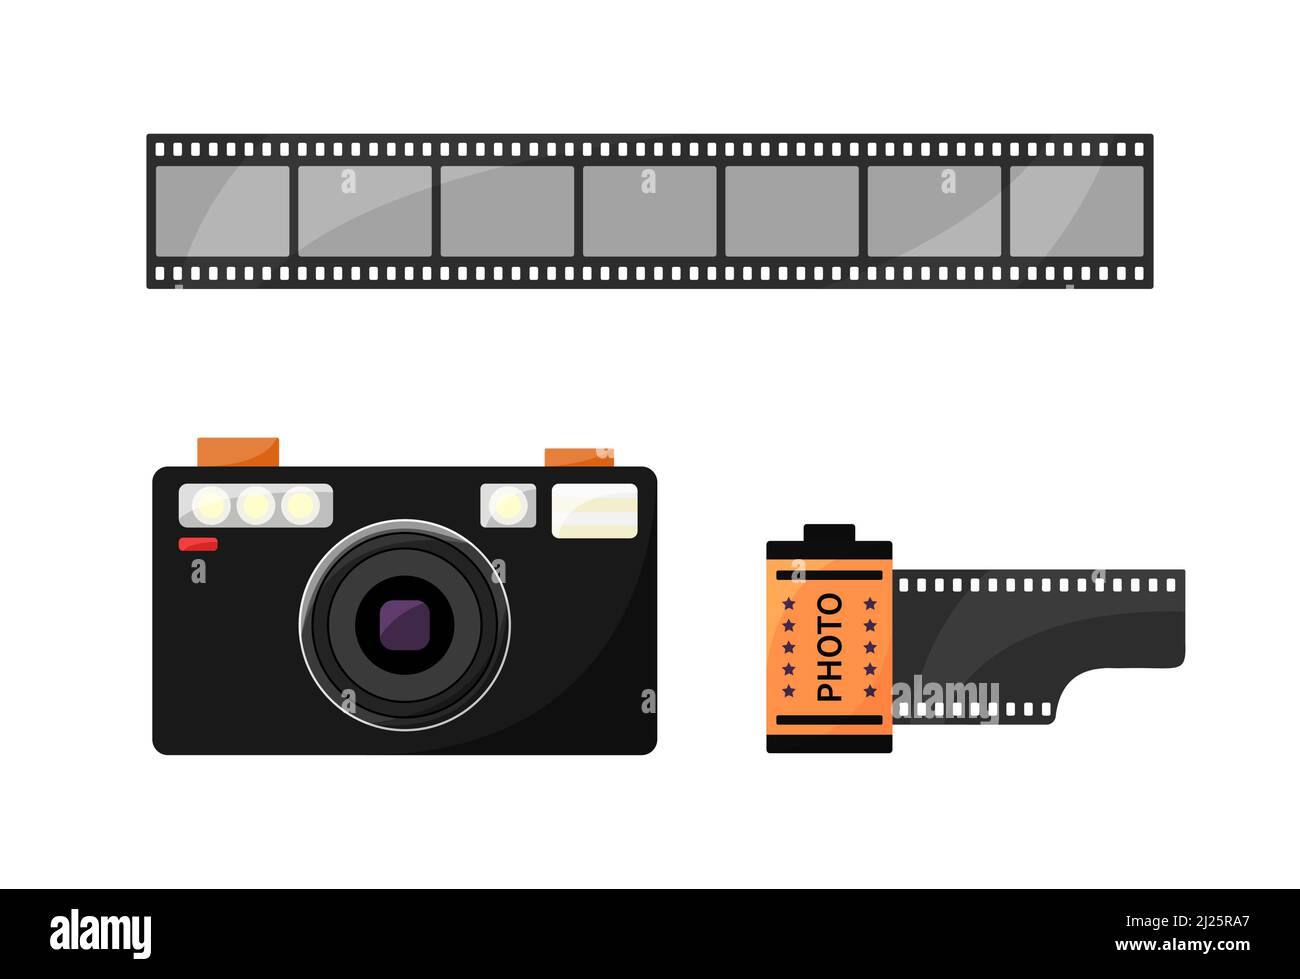 90s Fotokamera, Filmrolle und Filmstreifen isoliert. Retro-Kamera des Fotografen. Set mit Fotoausrüstung aus den Jahren 1980s und 1990s. Vektorgrafik flach illustrative Stock Vektor